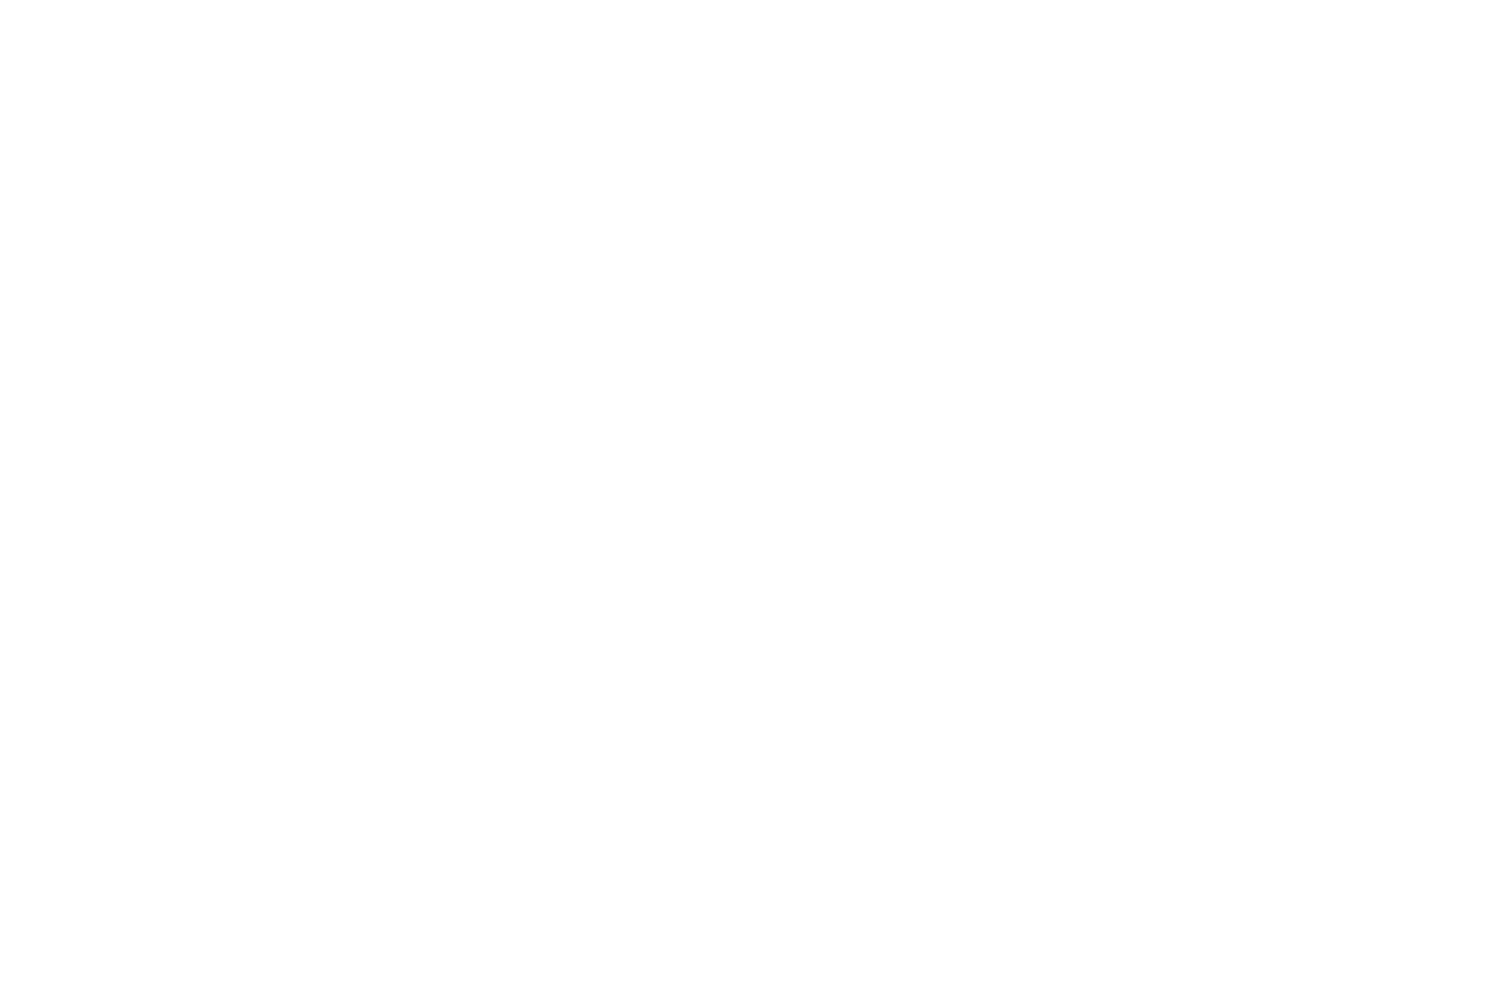 Wheels 2 Work - Sioux Falls SD